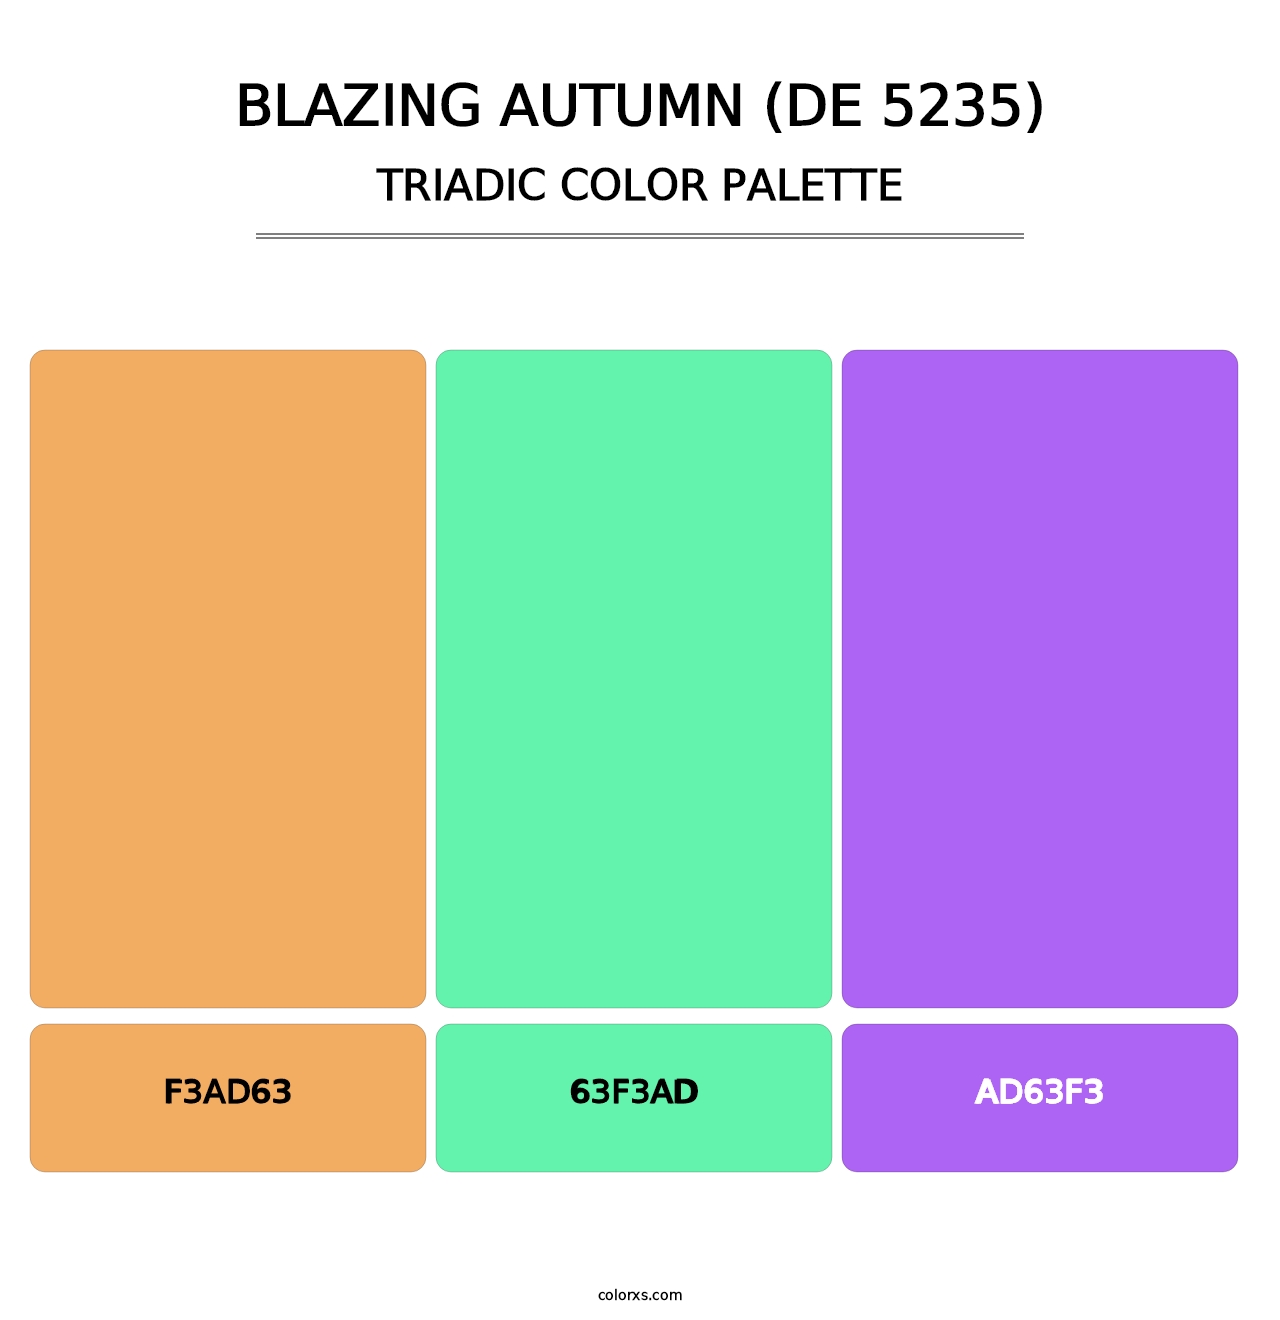 Blazing Autumn (DE 5235) - Triadic Color Palette